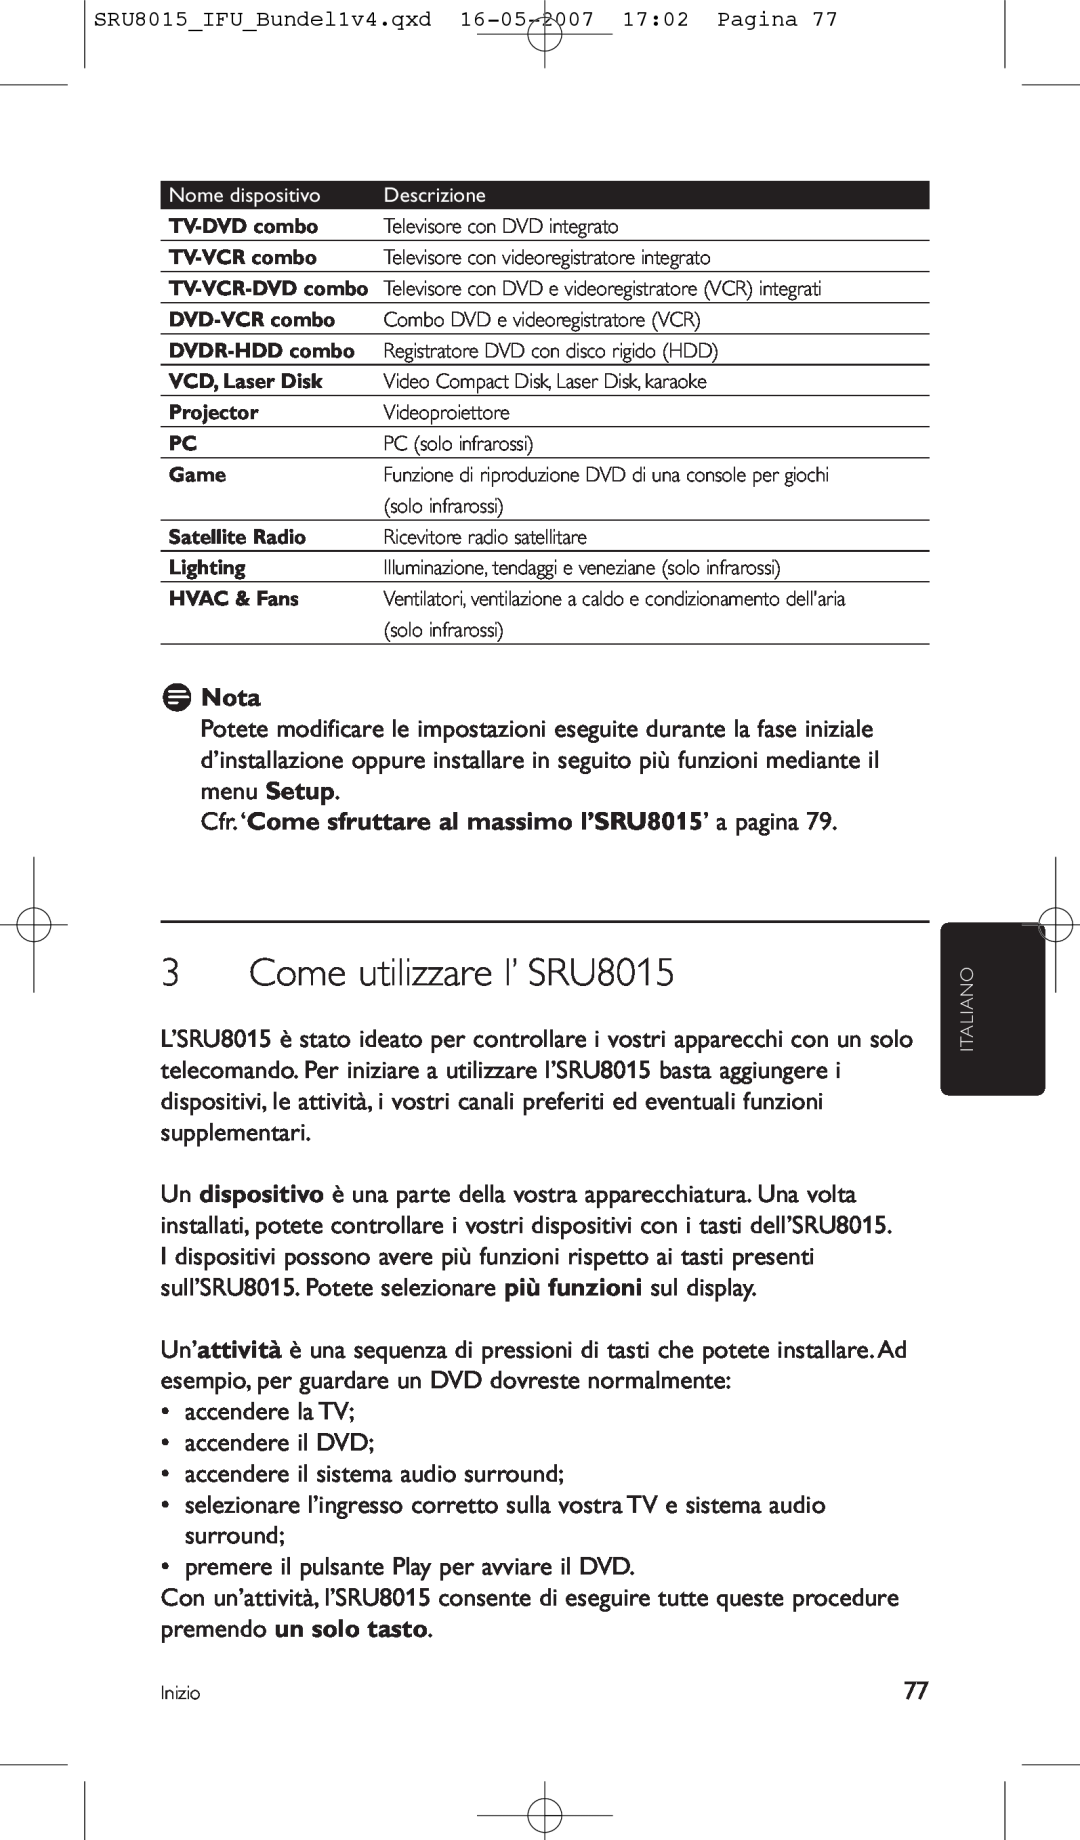 Philips manual Come utilizzare l’ SRU8015, Cfr. ‘Come sfruttare al massimo l’SRU8015’ a pagina, D Nota 